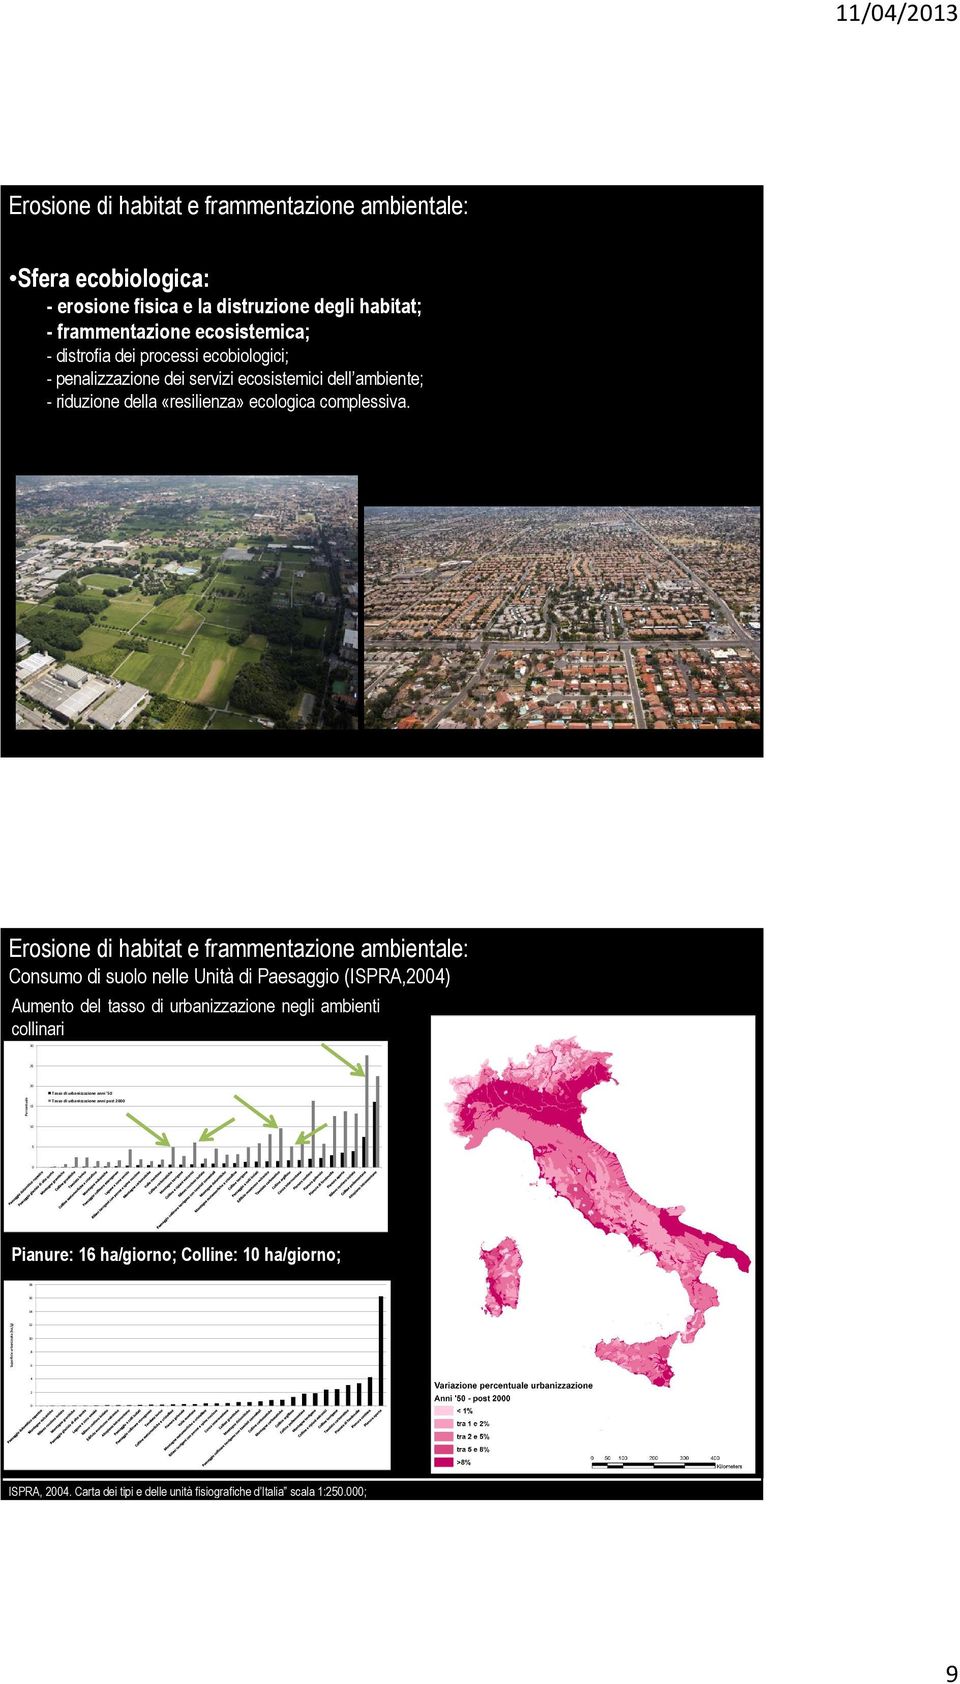 Erosione di habitat e frammentazione ambientale: Consumo di suolo nelle Unità di Paesaggio (ISPRA,2004) Aumento del tasso di urbanizzazione negli ambienti collinari 30 25 20 Tasso di